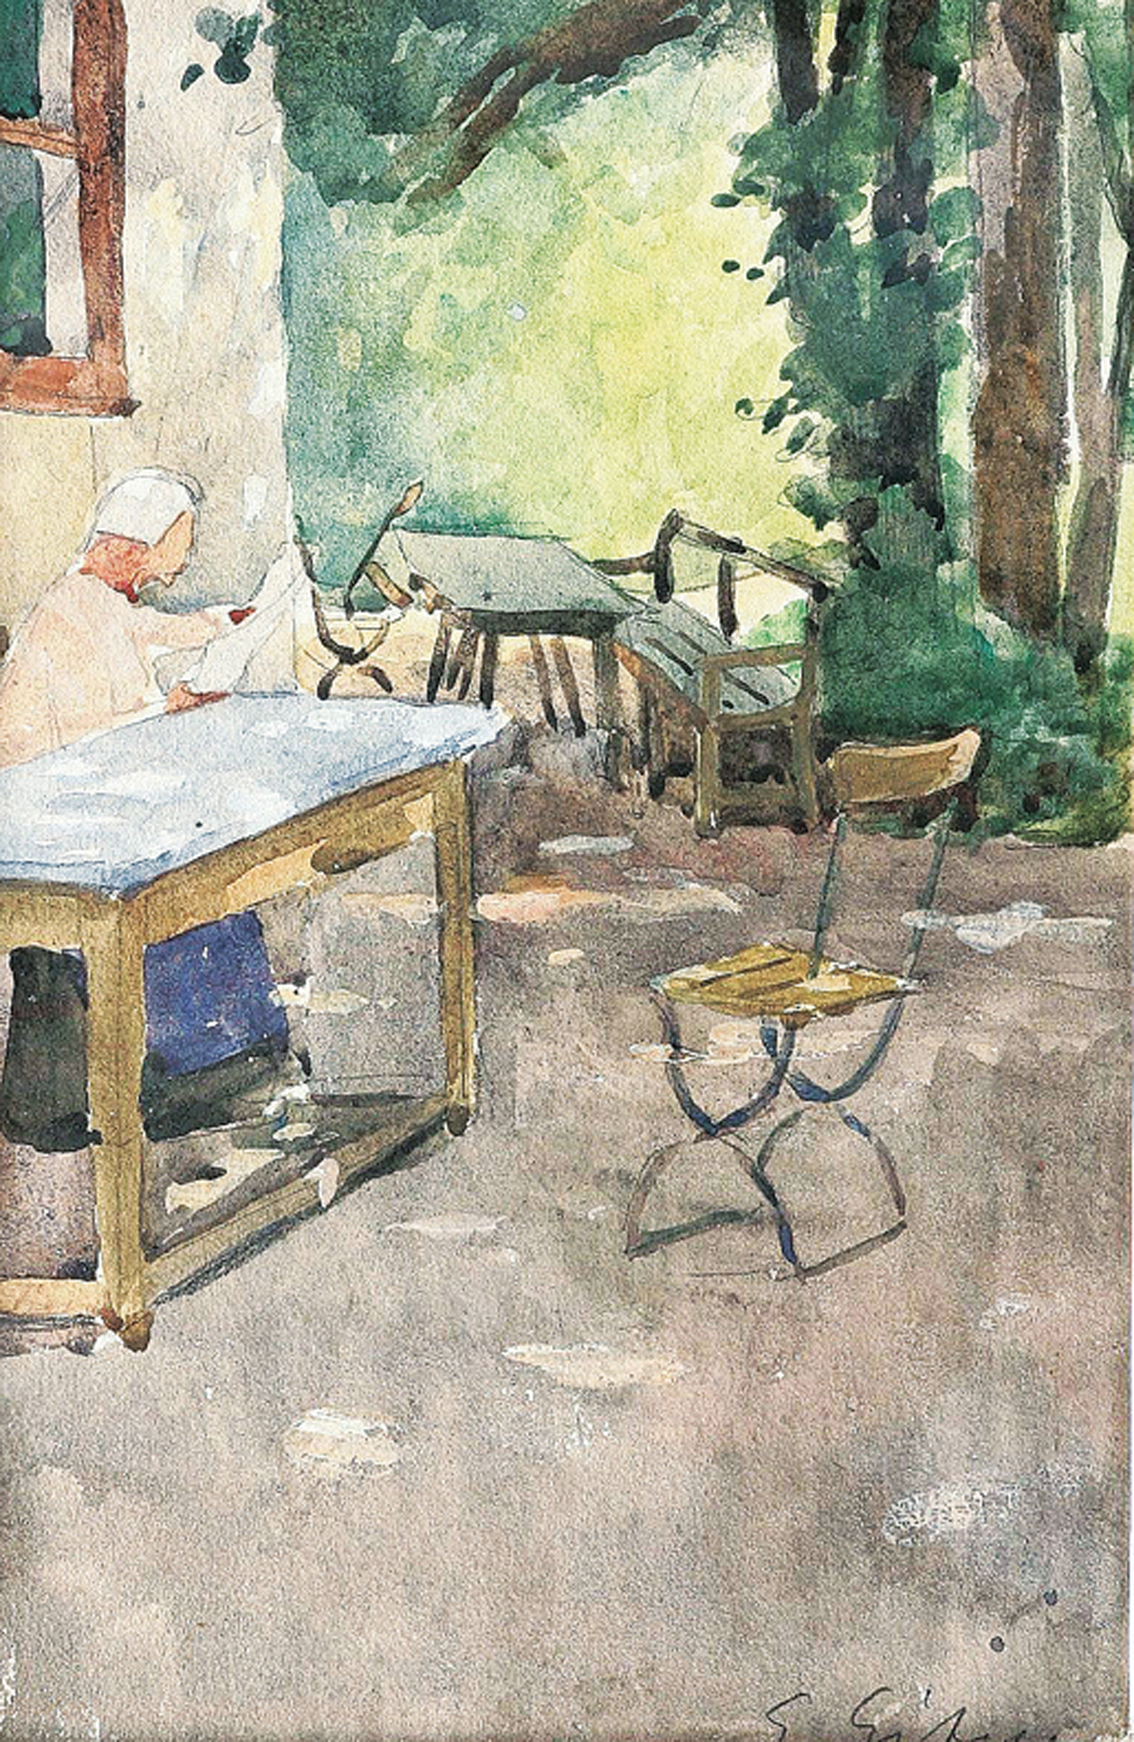 "A woman reading a newspapewr in a pub garden"